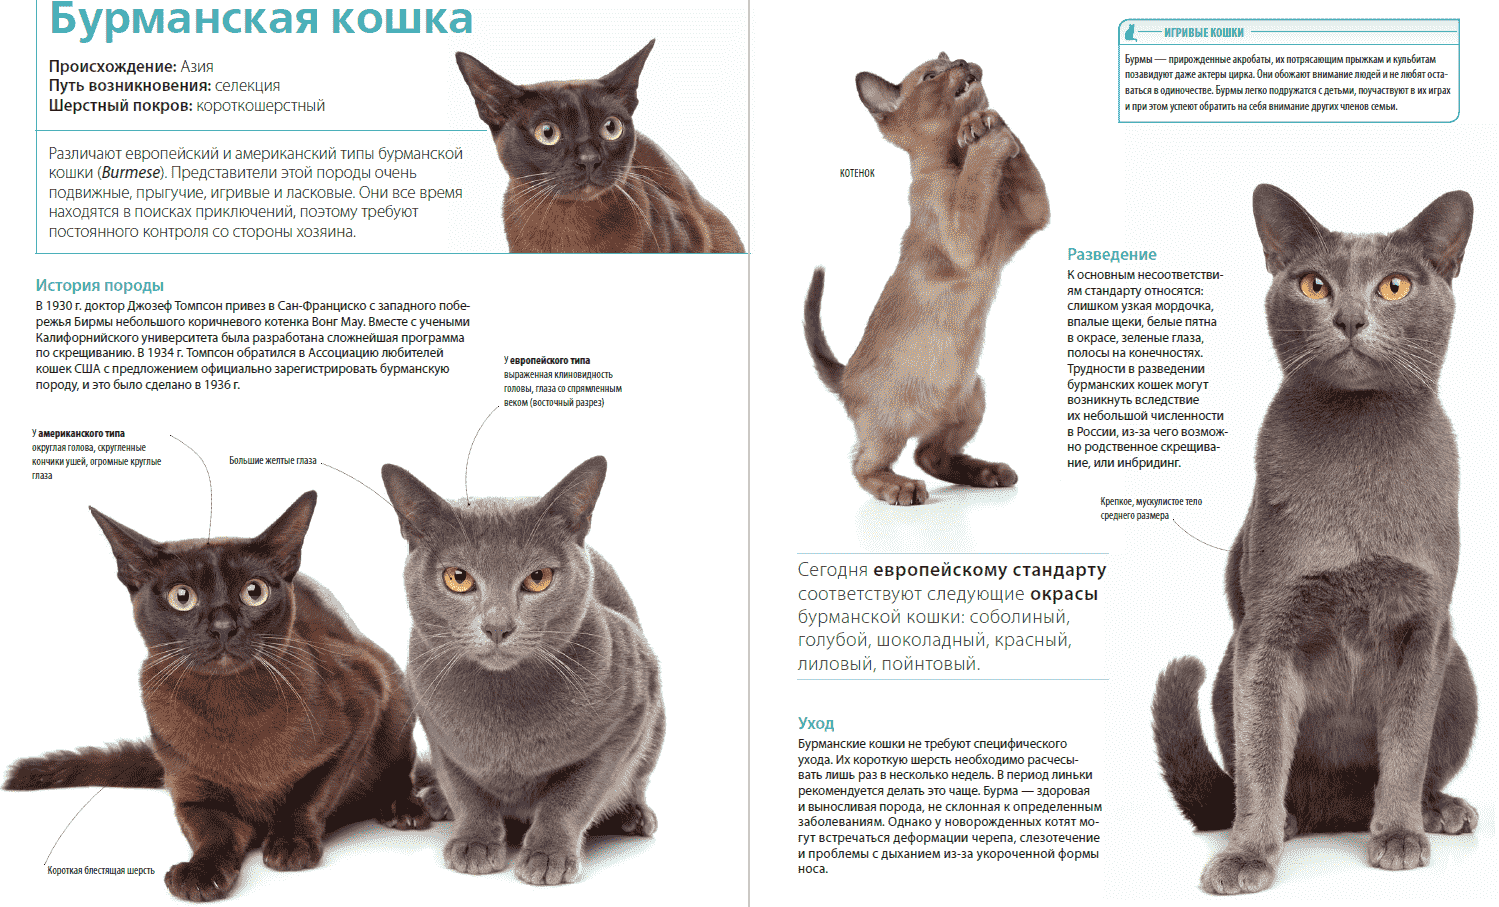 Характеристика породы и описание характера бурманской кошки